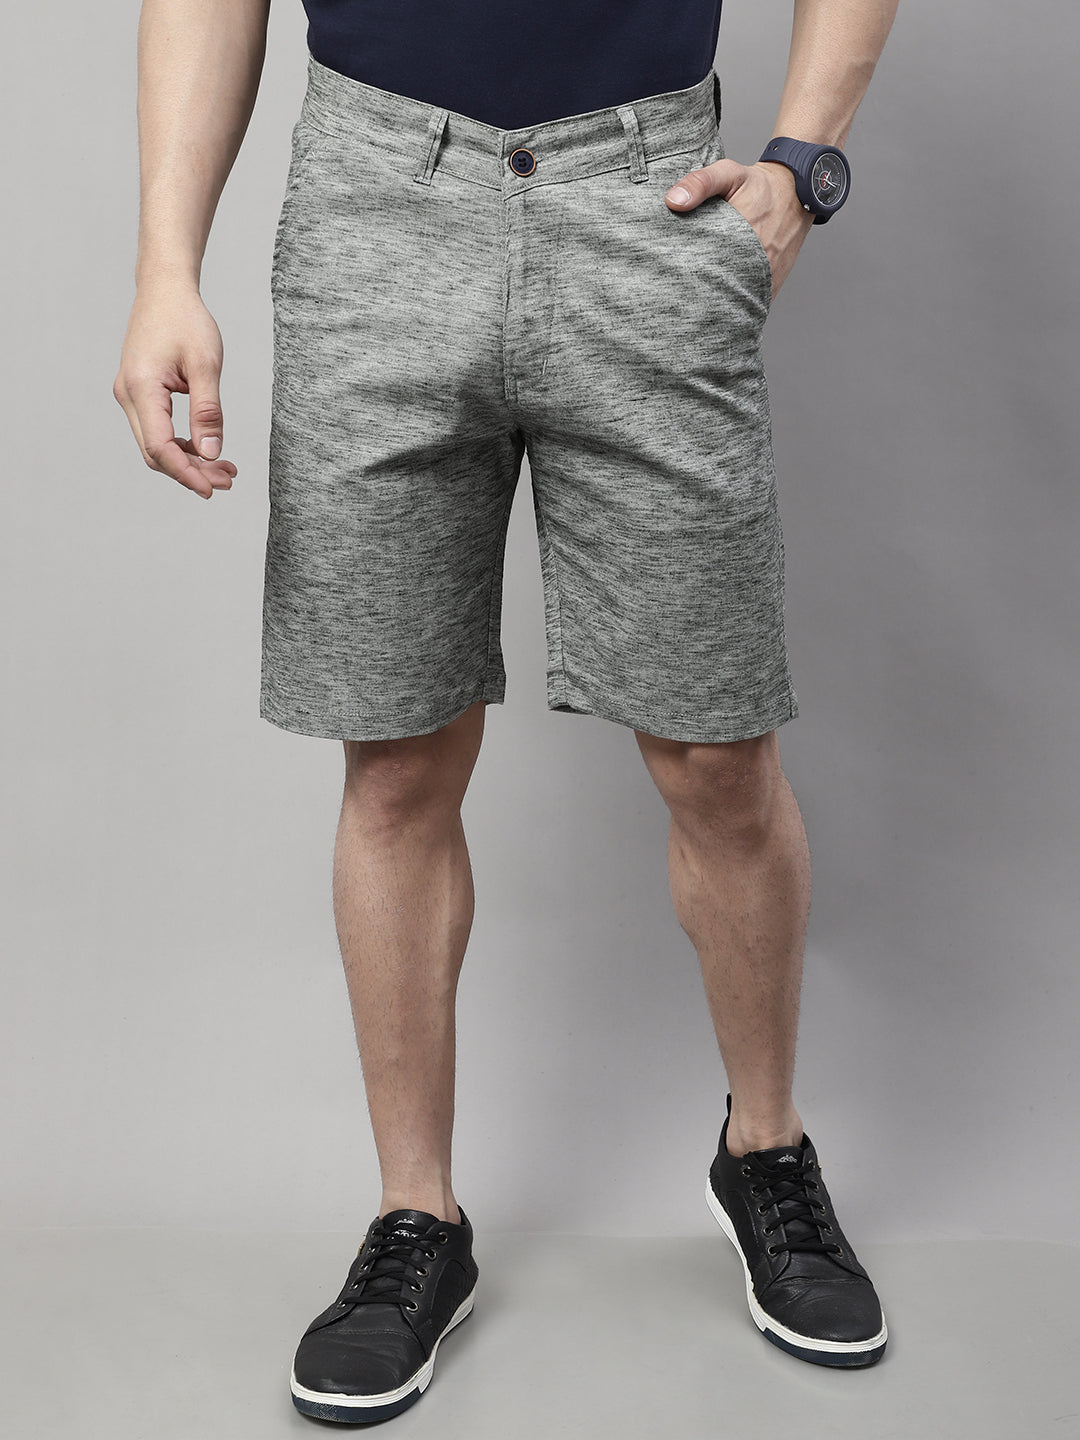 Trendsetting Men's Shorts - BLACK